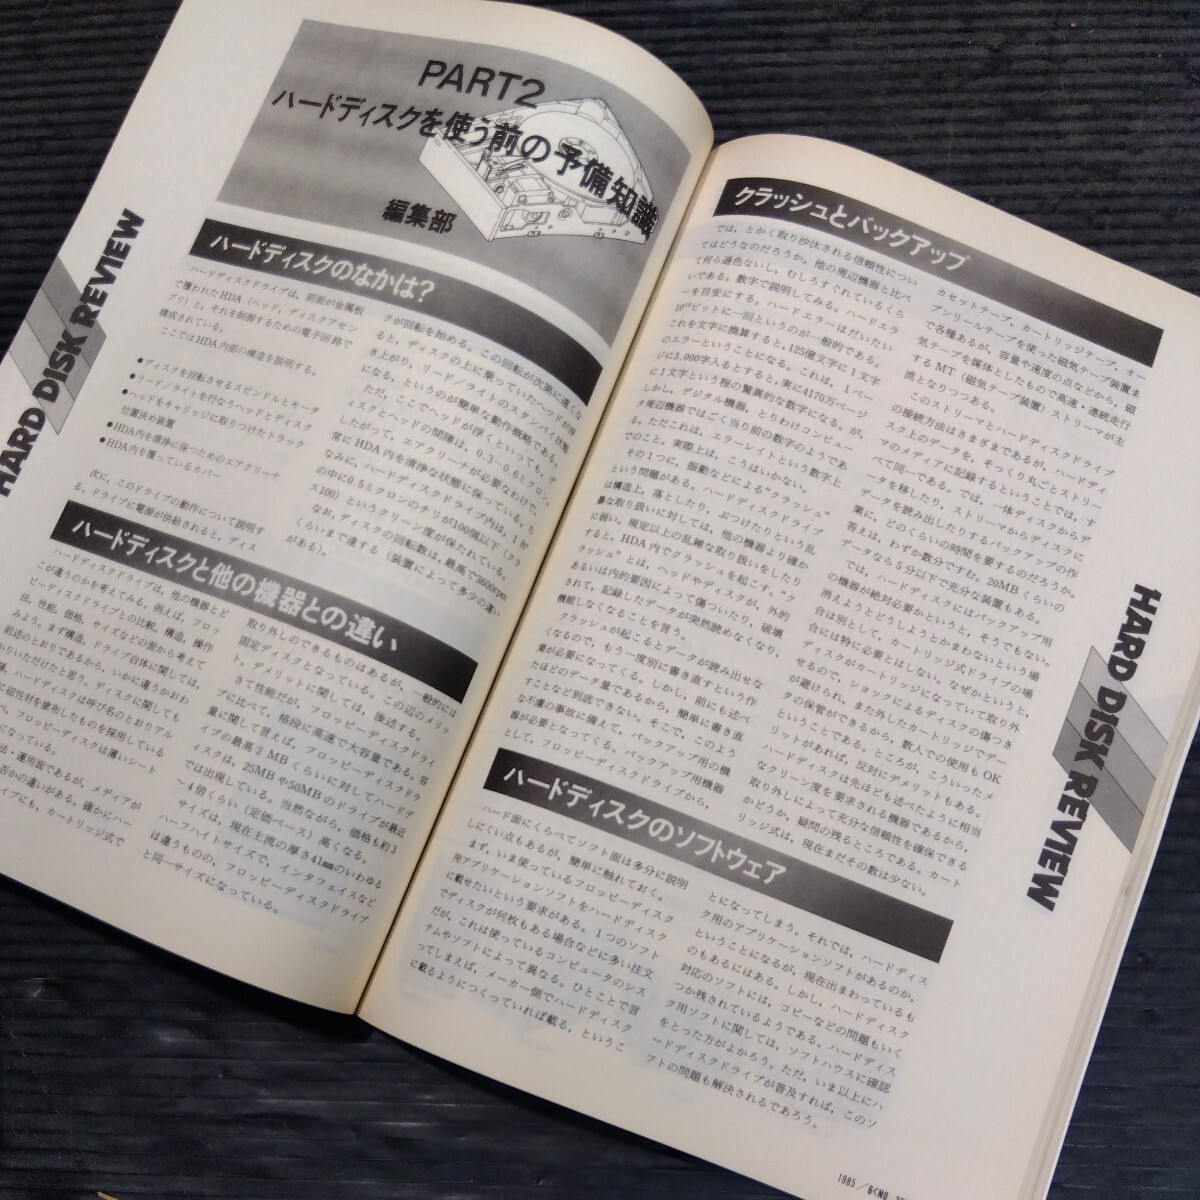 ⑤ журнал PC журнал 1985 год 4 шт. комплект не комплект новый . изначальный фирма компьютернные игры компьютер программное обеспечение программирование текстовой процессор 